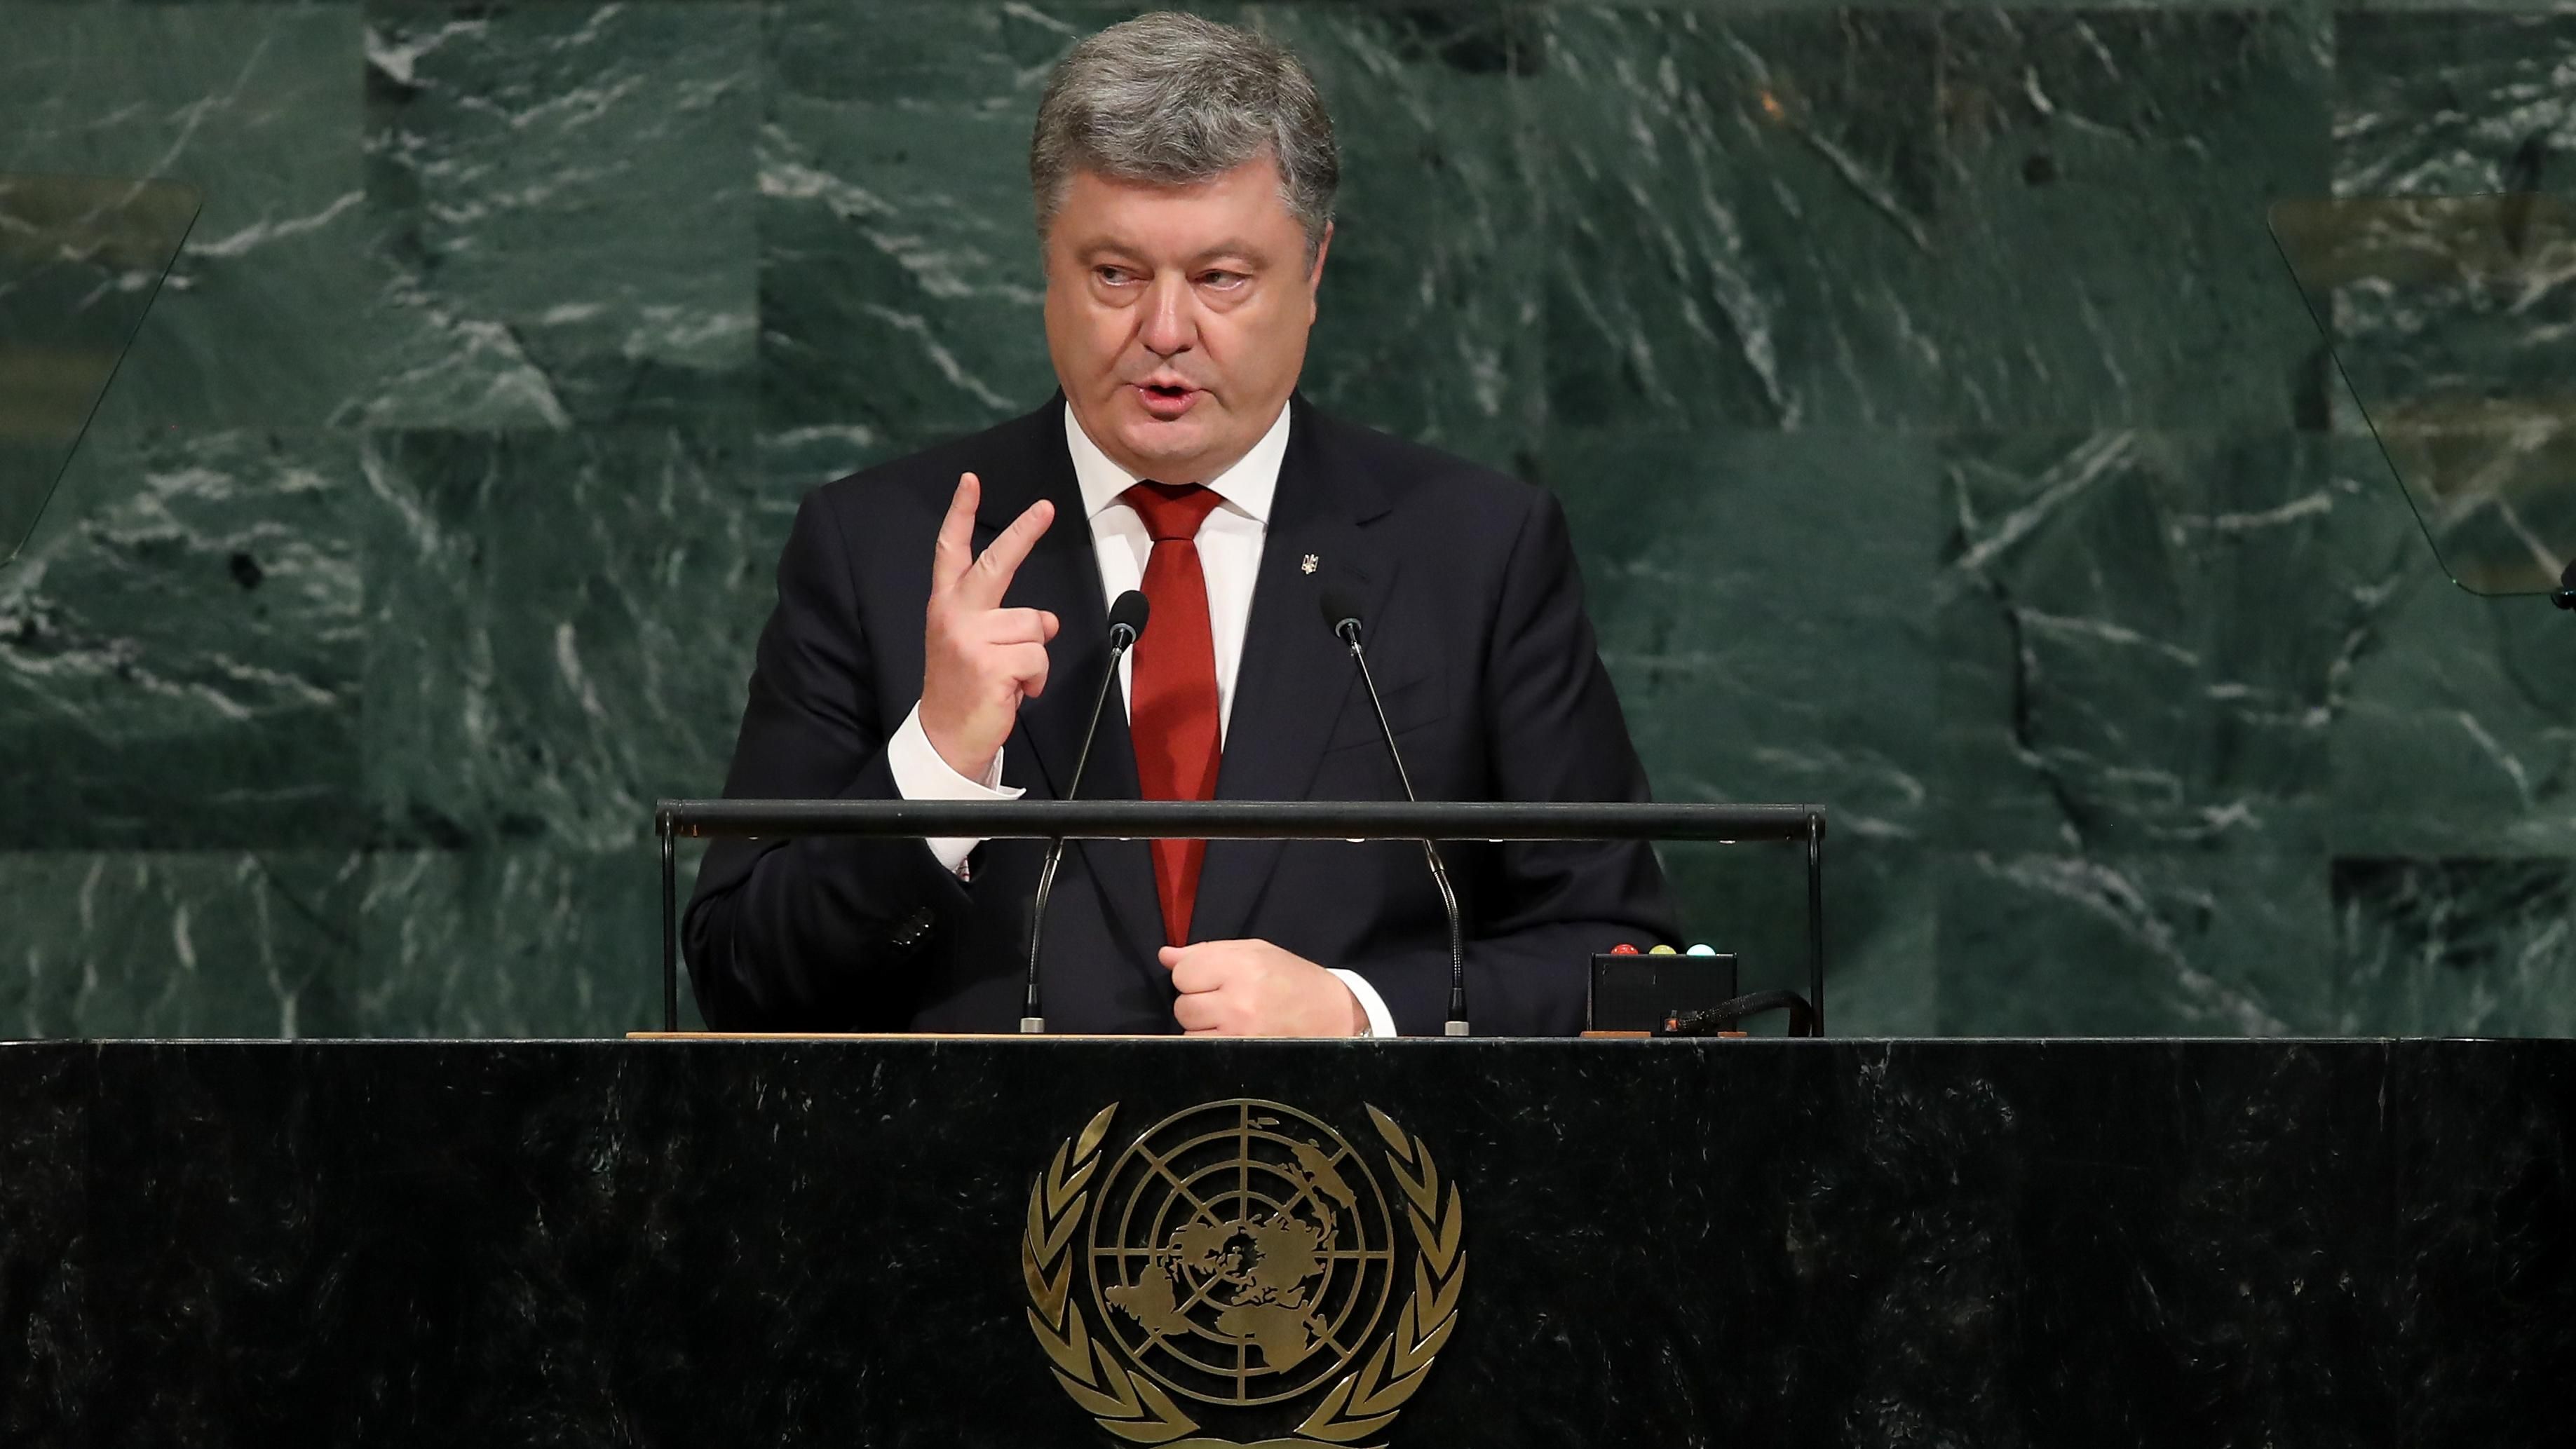 Порошенко отметился громким заявлением в отношении КНДР и вспомнил украинский опыт